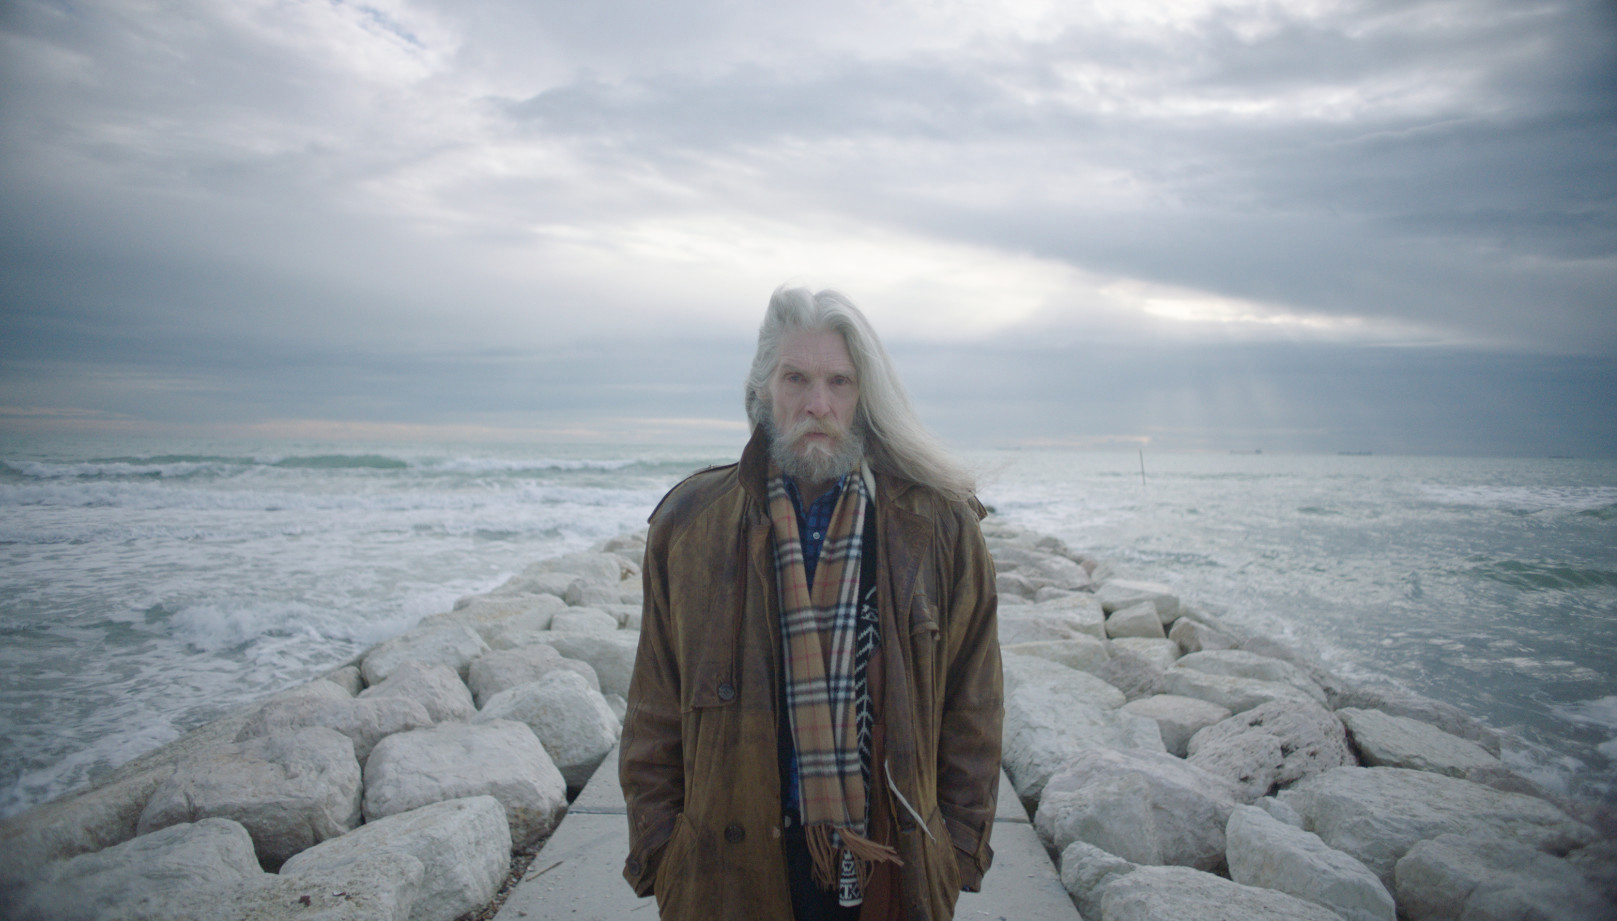 Cena do documentário O Garoto Mais Bonito do Mundo. Mostra um homem idoso, de cabelos brancos e barba branca, compridos, parado próximo ao mar. Ao fundo, vemos a água azul.